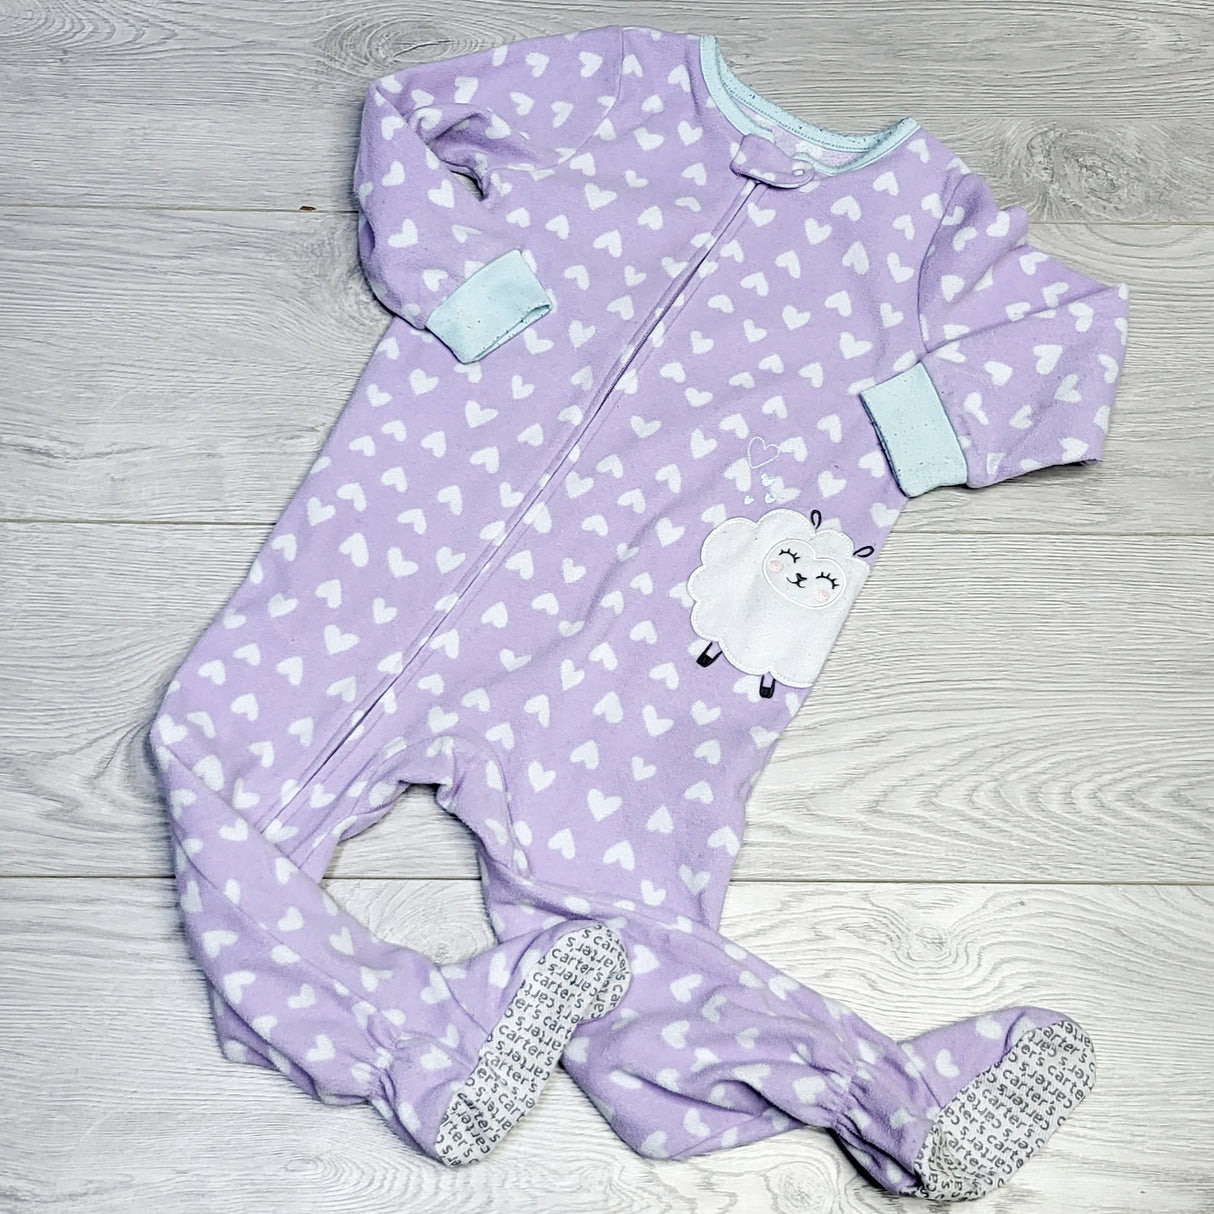 KJHN1 - Carters purple polka dot zippered fleece sleeper. Size 2T